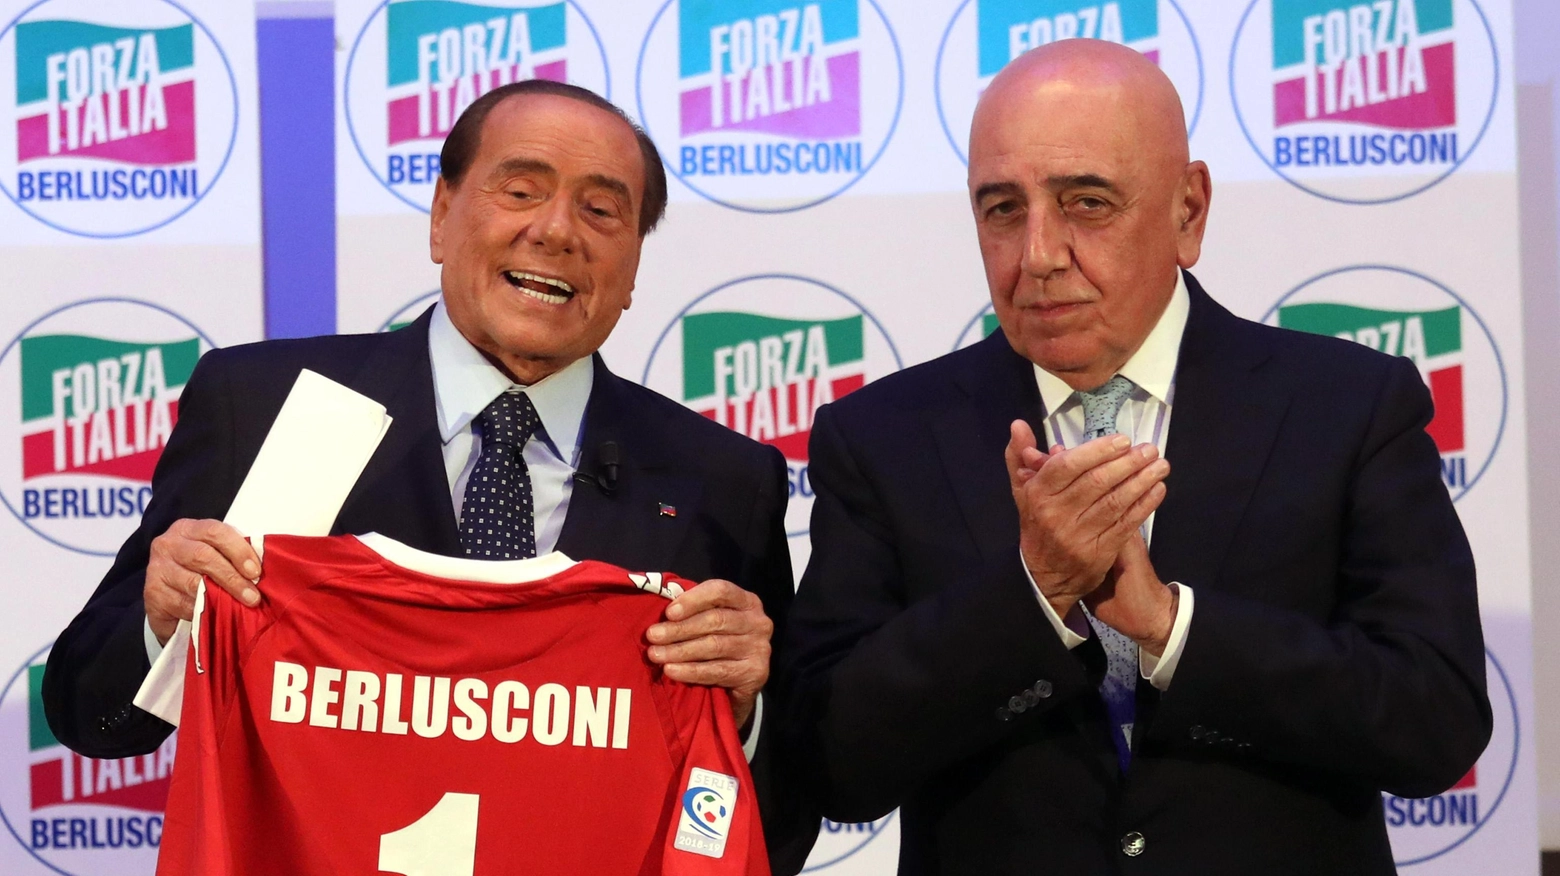 Adriano Galliani, ex dirigente di Silvio Berlusconi, potrebbe tornare in politica. Intanto, il Monza Calcio si prepara per una ripresa di lavoro a luglio con l'obiettivo di raggiungere i soliti alti livelli voluti da Berlusconi.